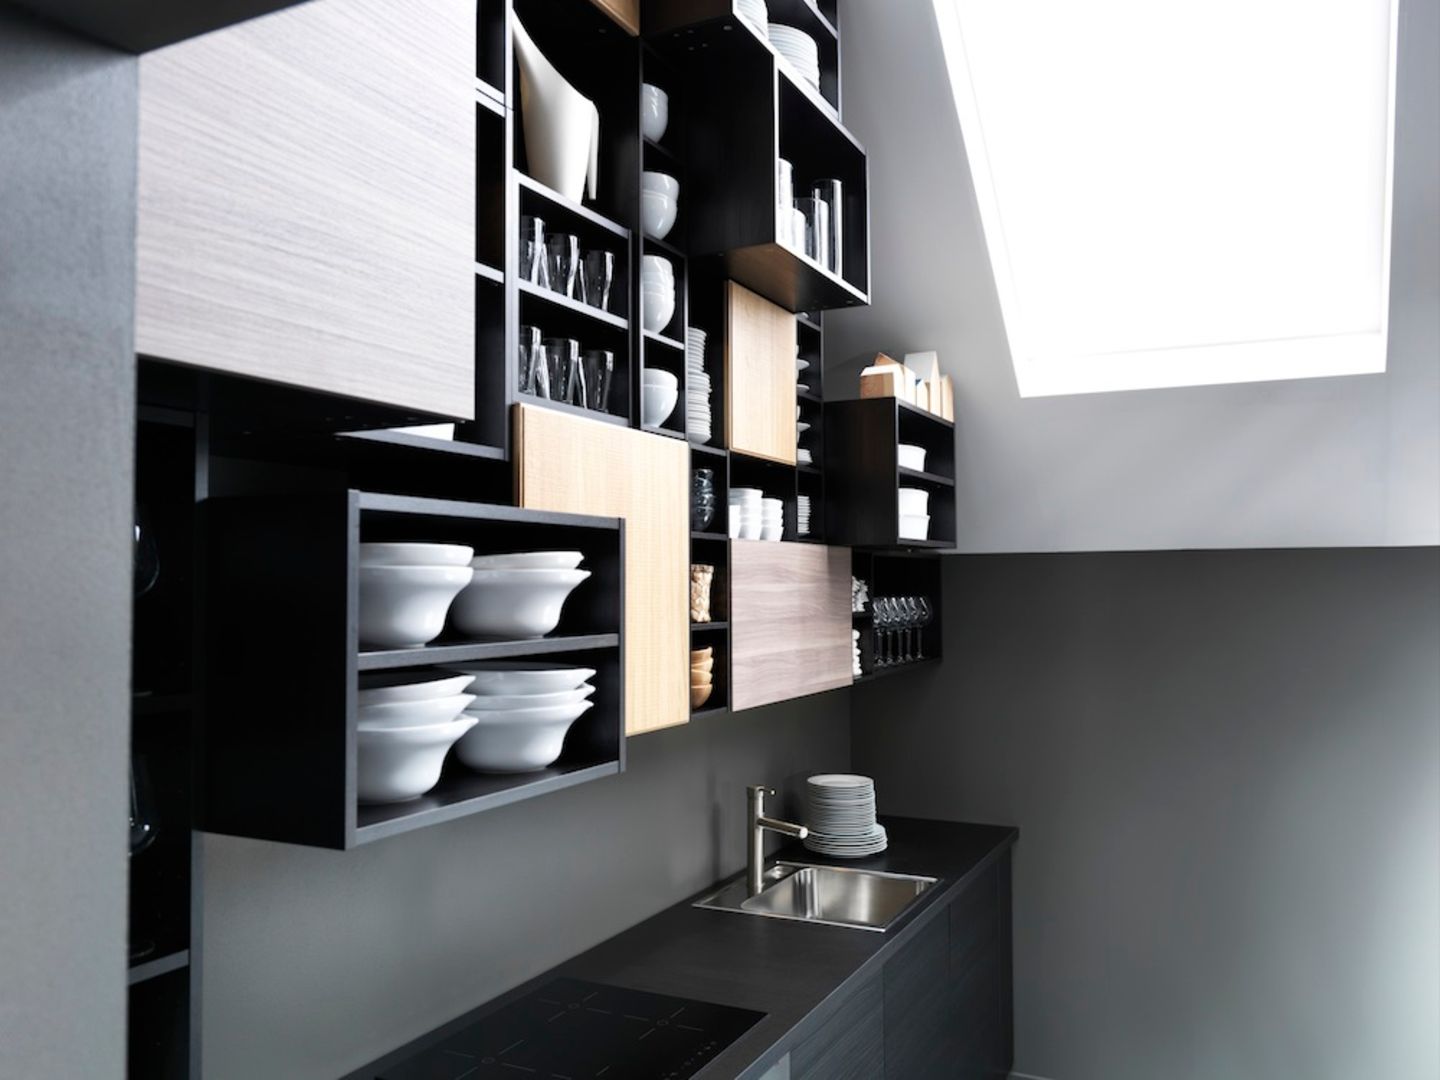 Küchenmöbel "Metod" von Ikea